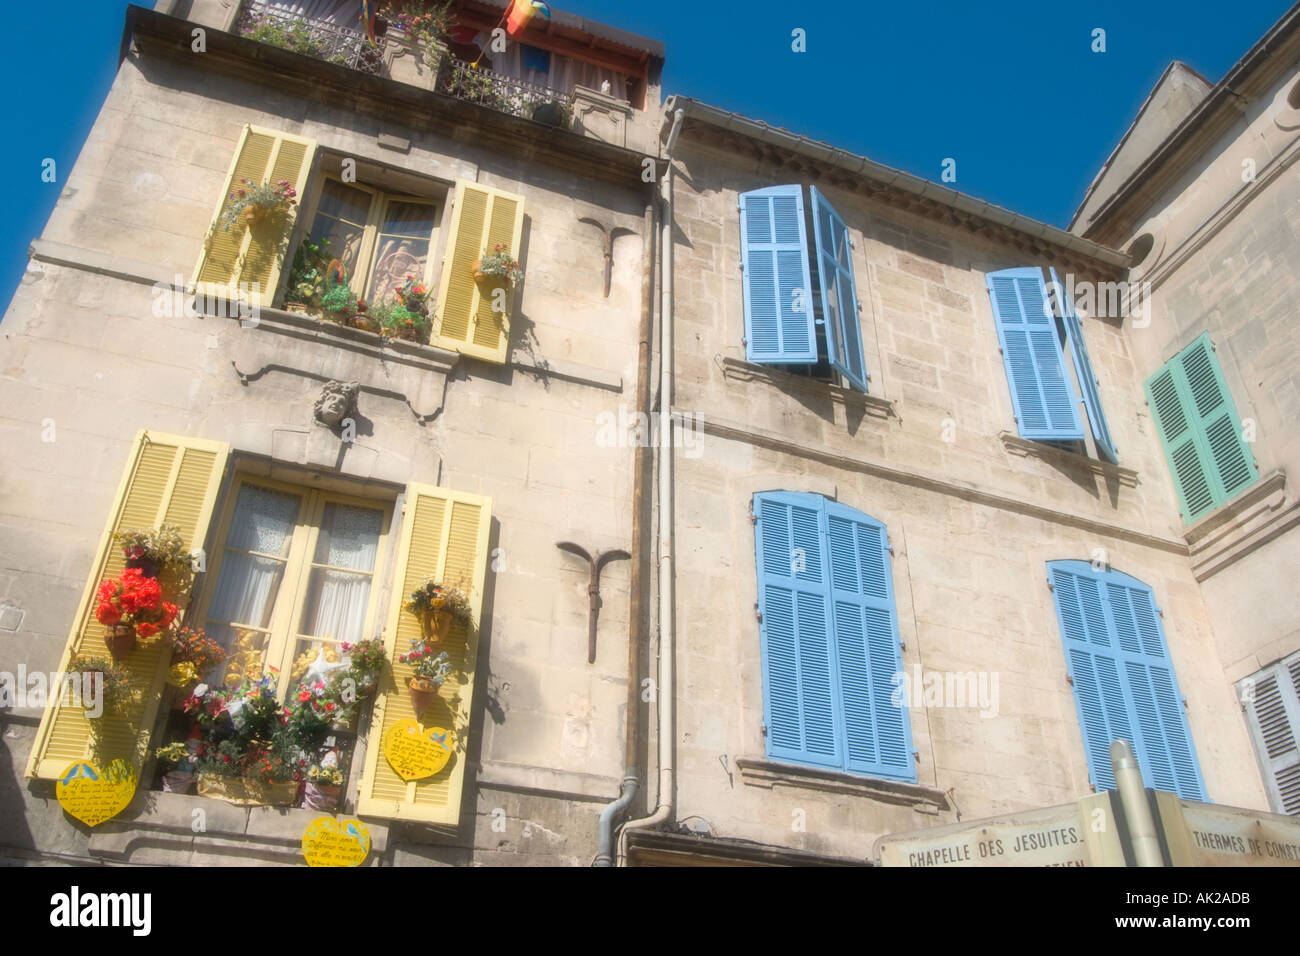 Soft focus shot de fenêtres à volets sur une vieille maison typique à Arles, Provence, France Banque D'Images